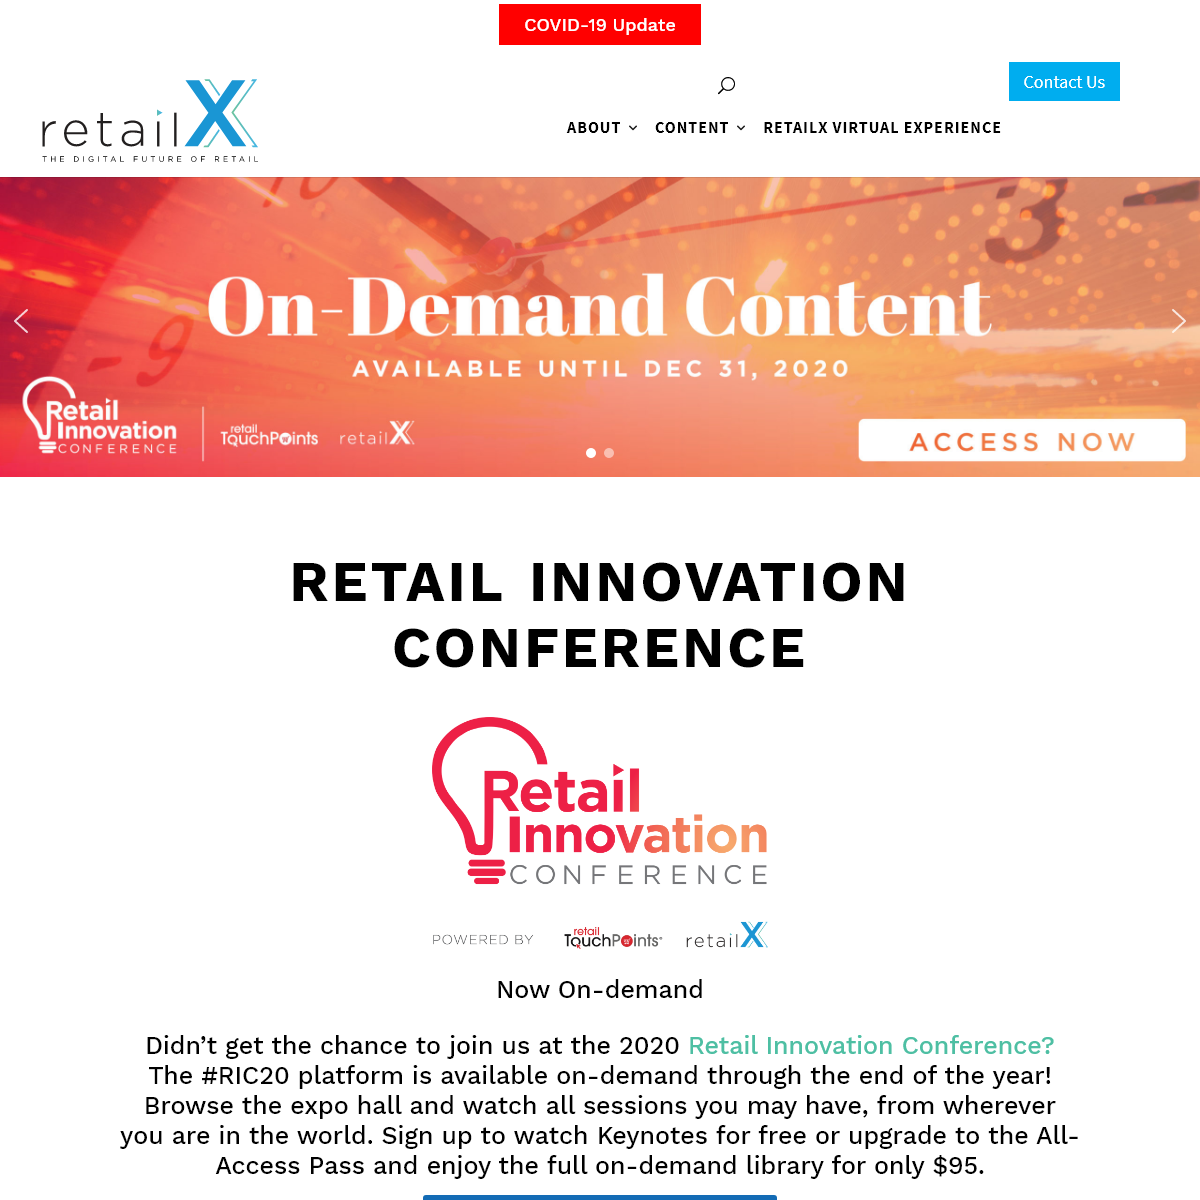 A complete backup of retailx.com